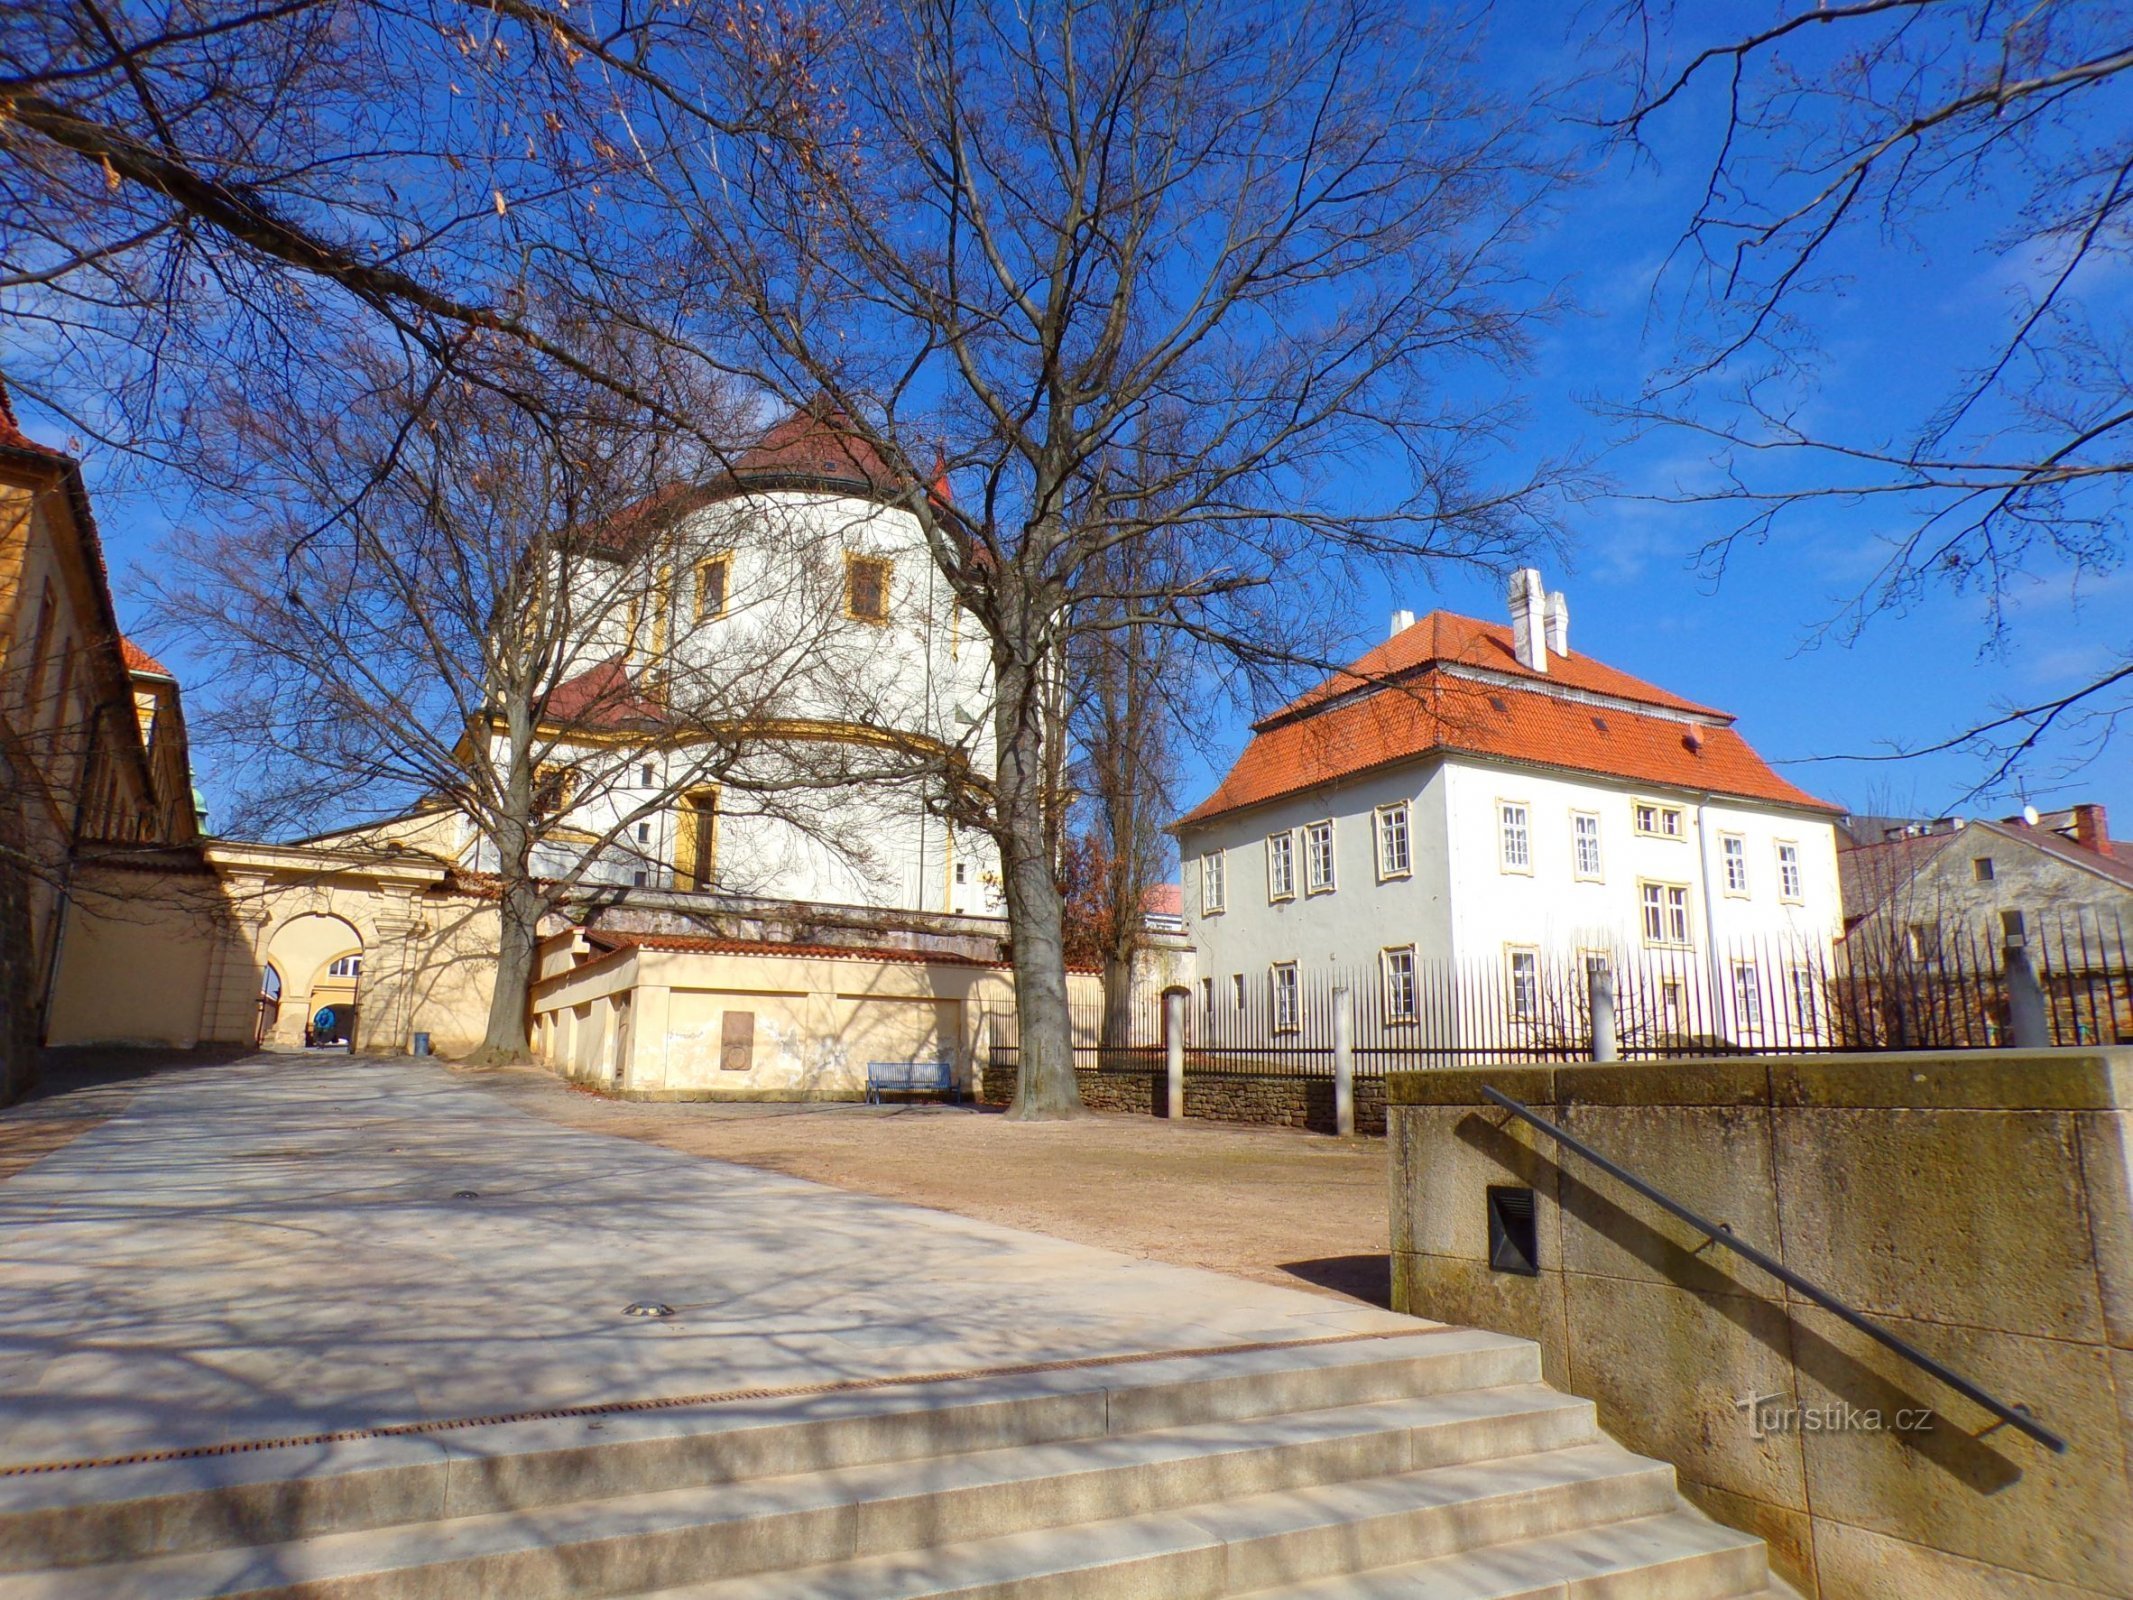 Church of St. Jacob the Greater and the Archdeaconry (Jičín, 3.3.2022/XNUMX/XNUMX)